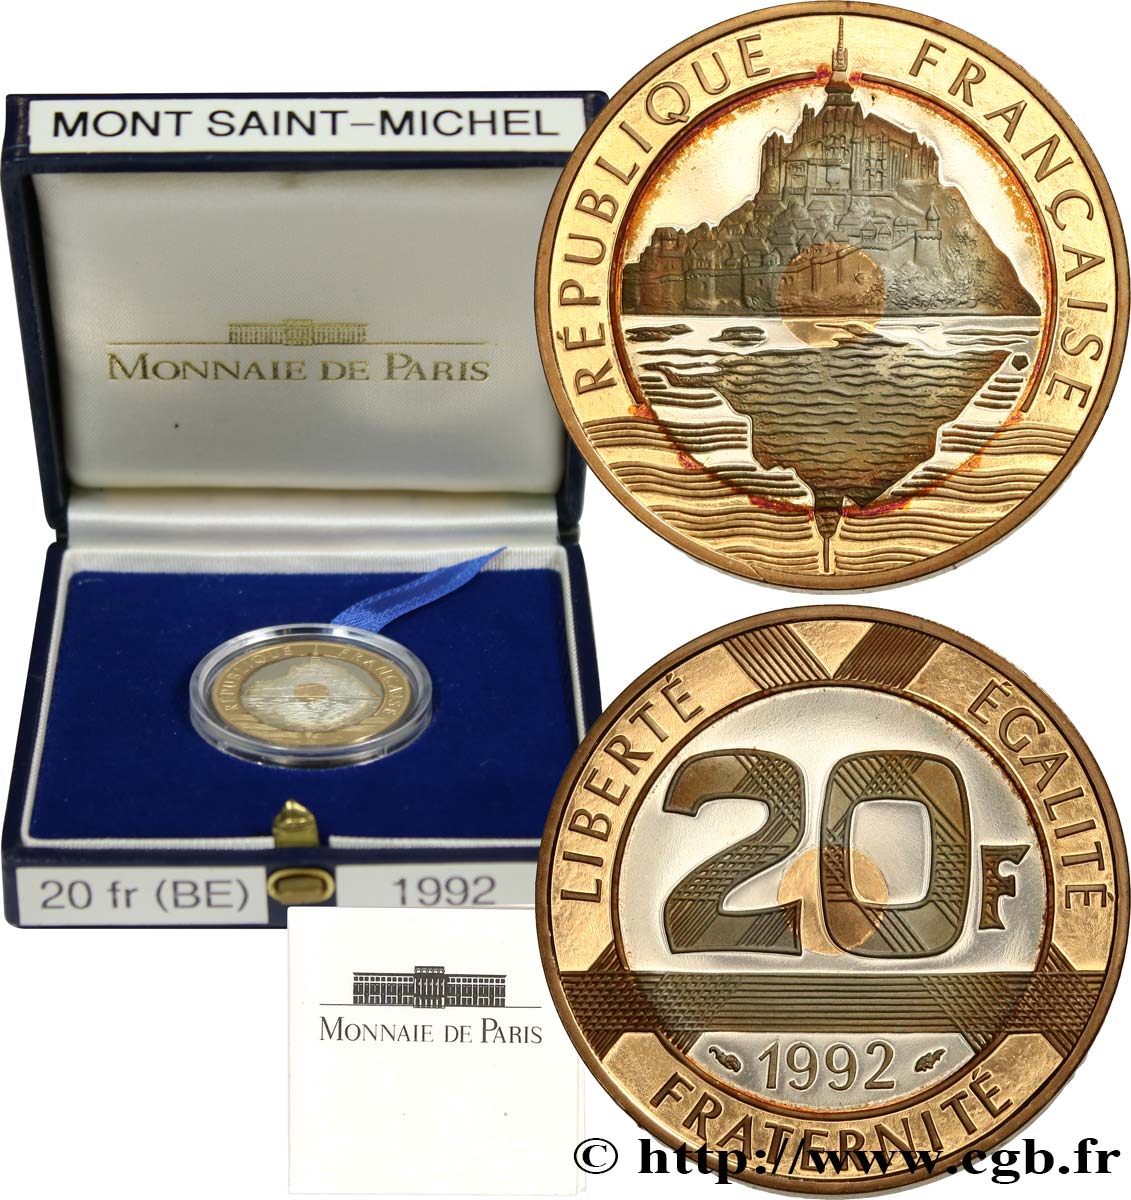 Belle Épreuve Or/Argent 20 francs - Mont Saint-Michel 1992 Pessac F5.1400 2 MS 